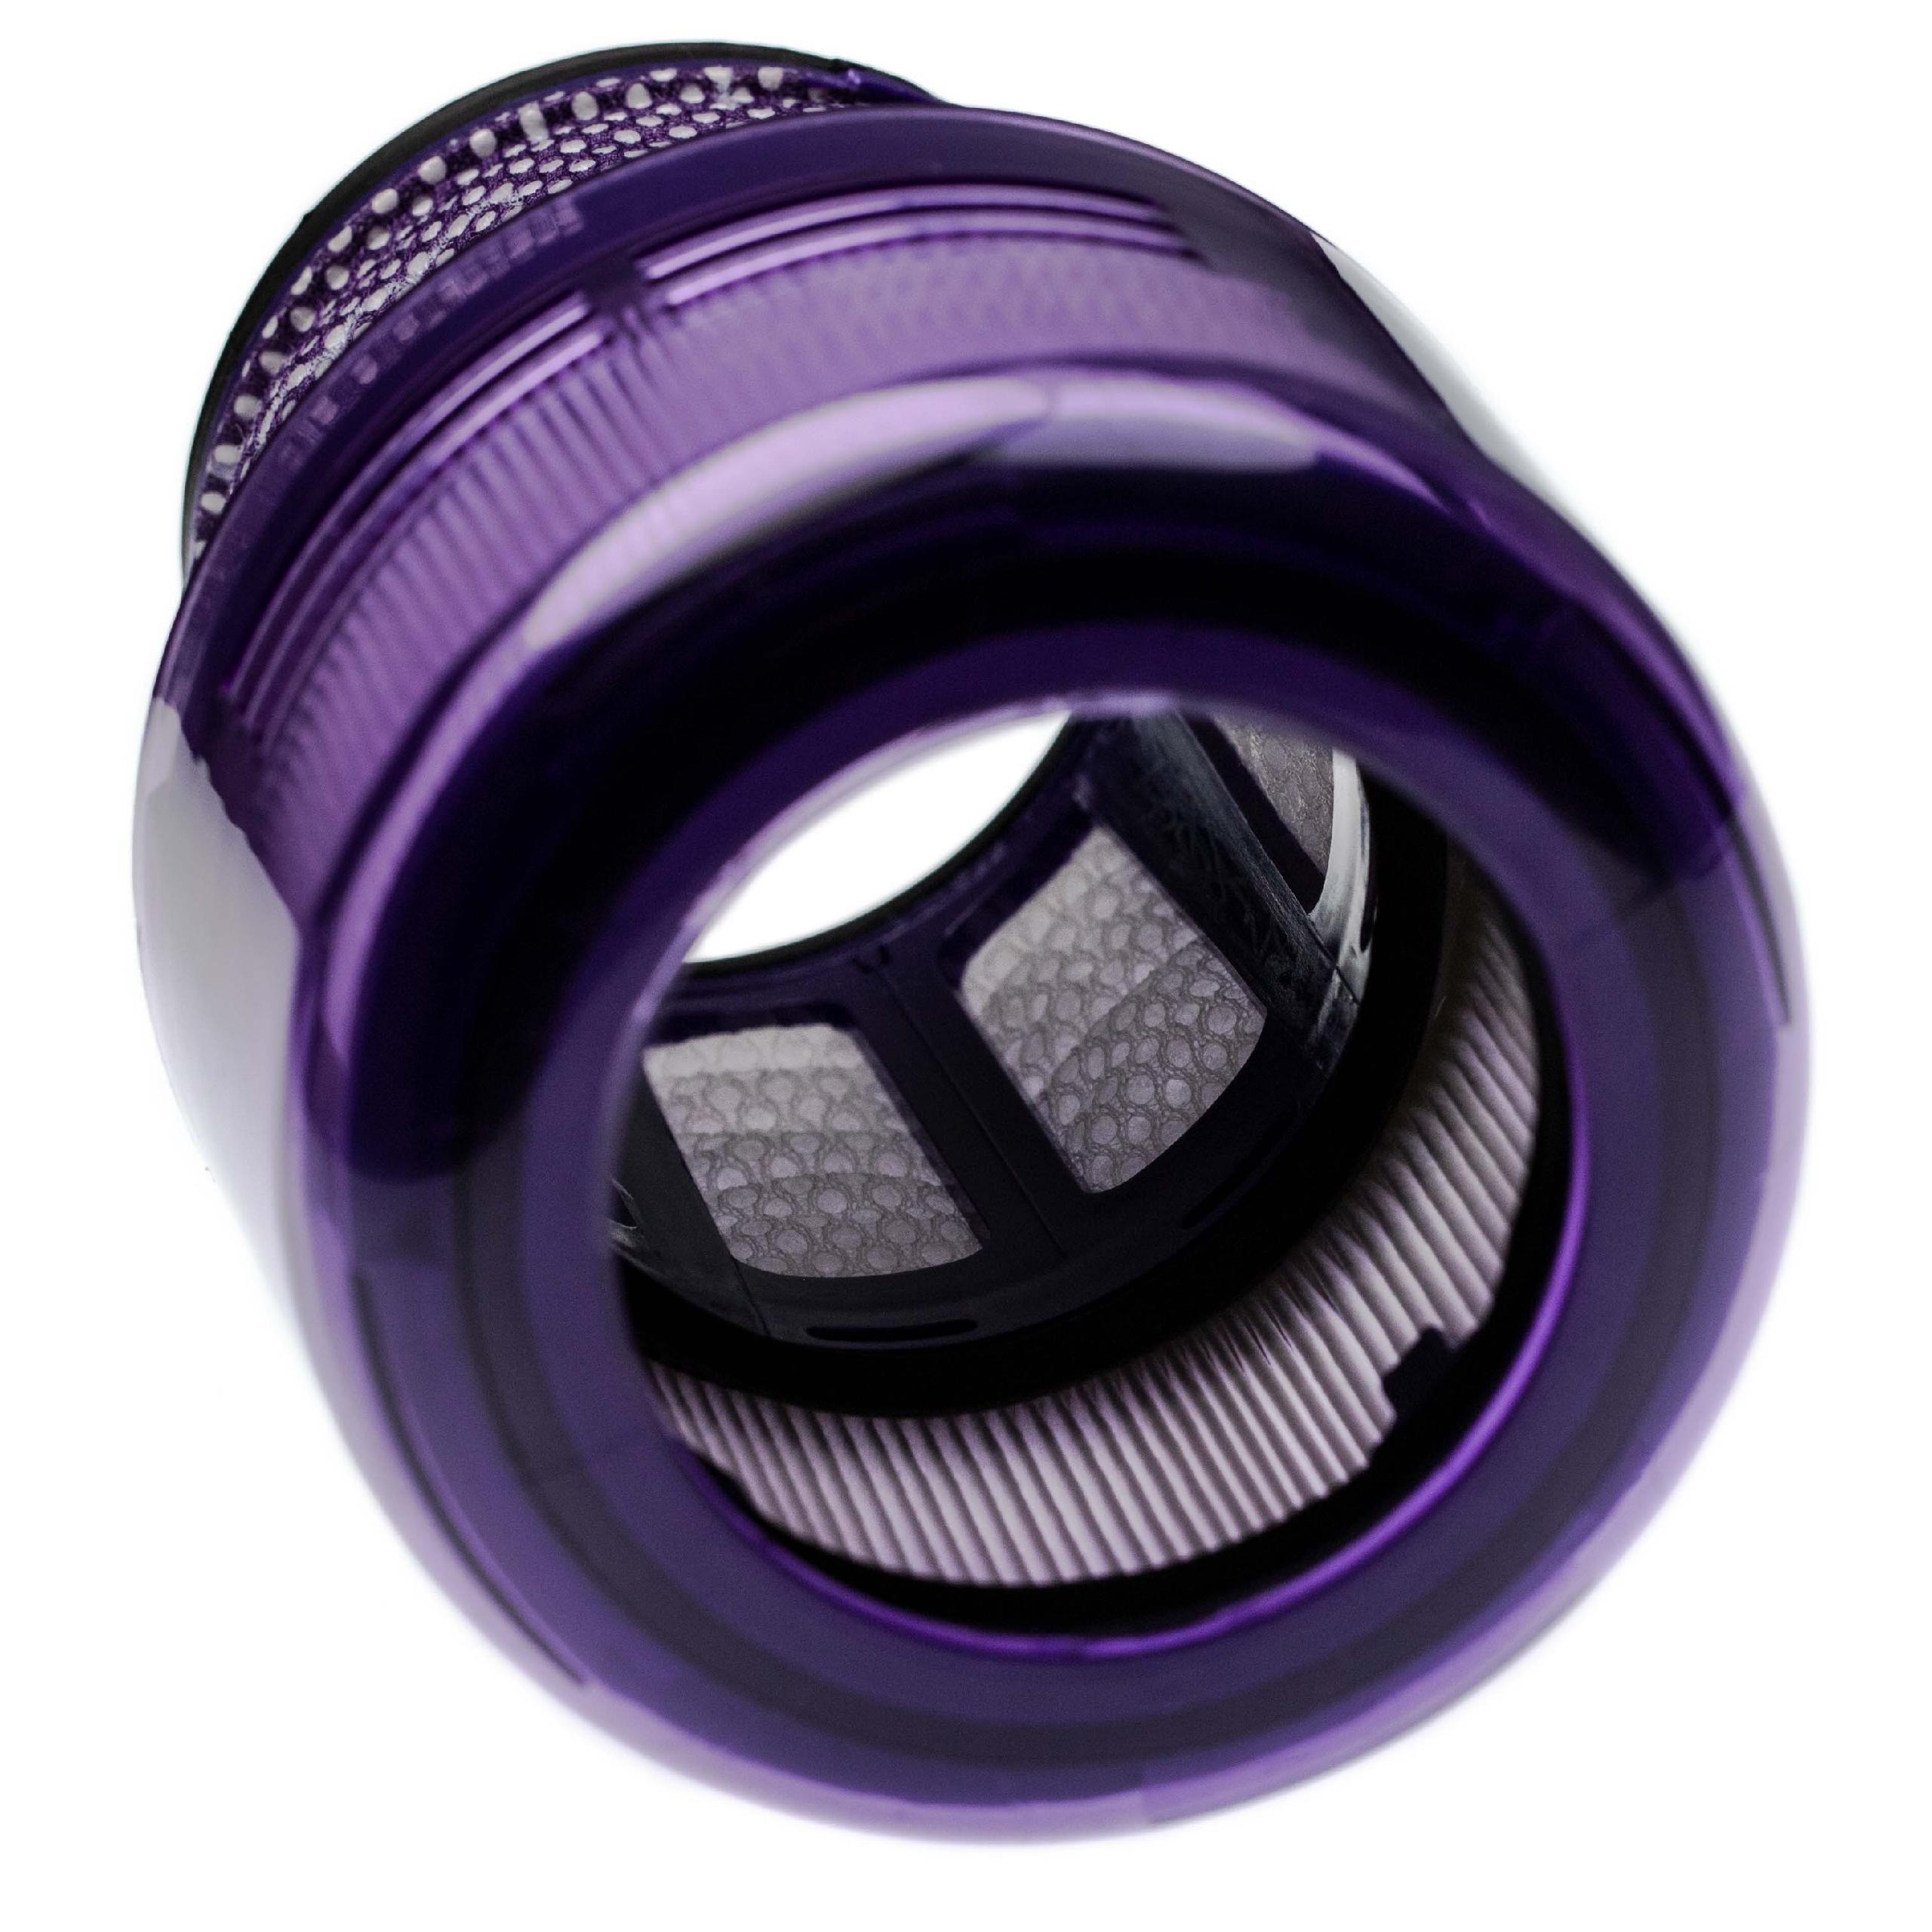 3x Filtre remplace Dyson 97001302, 970013-02 pour aspirateur - filtre anti-saleté